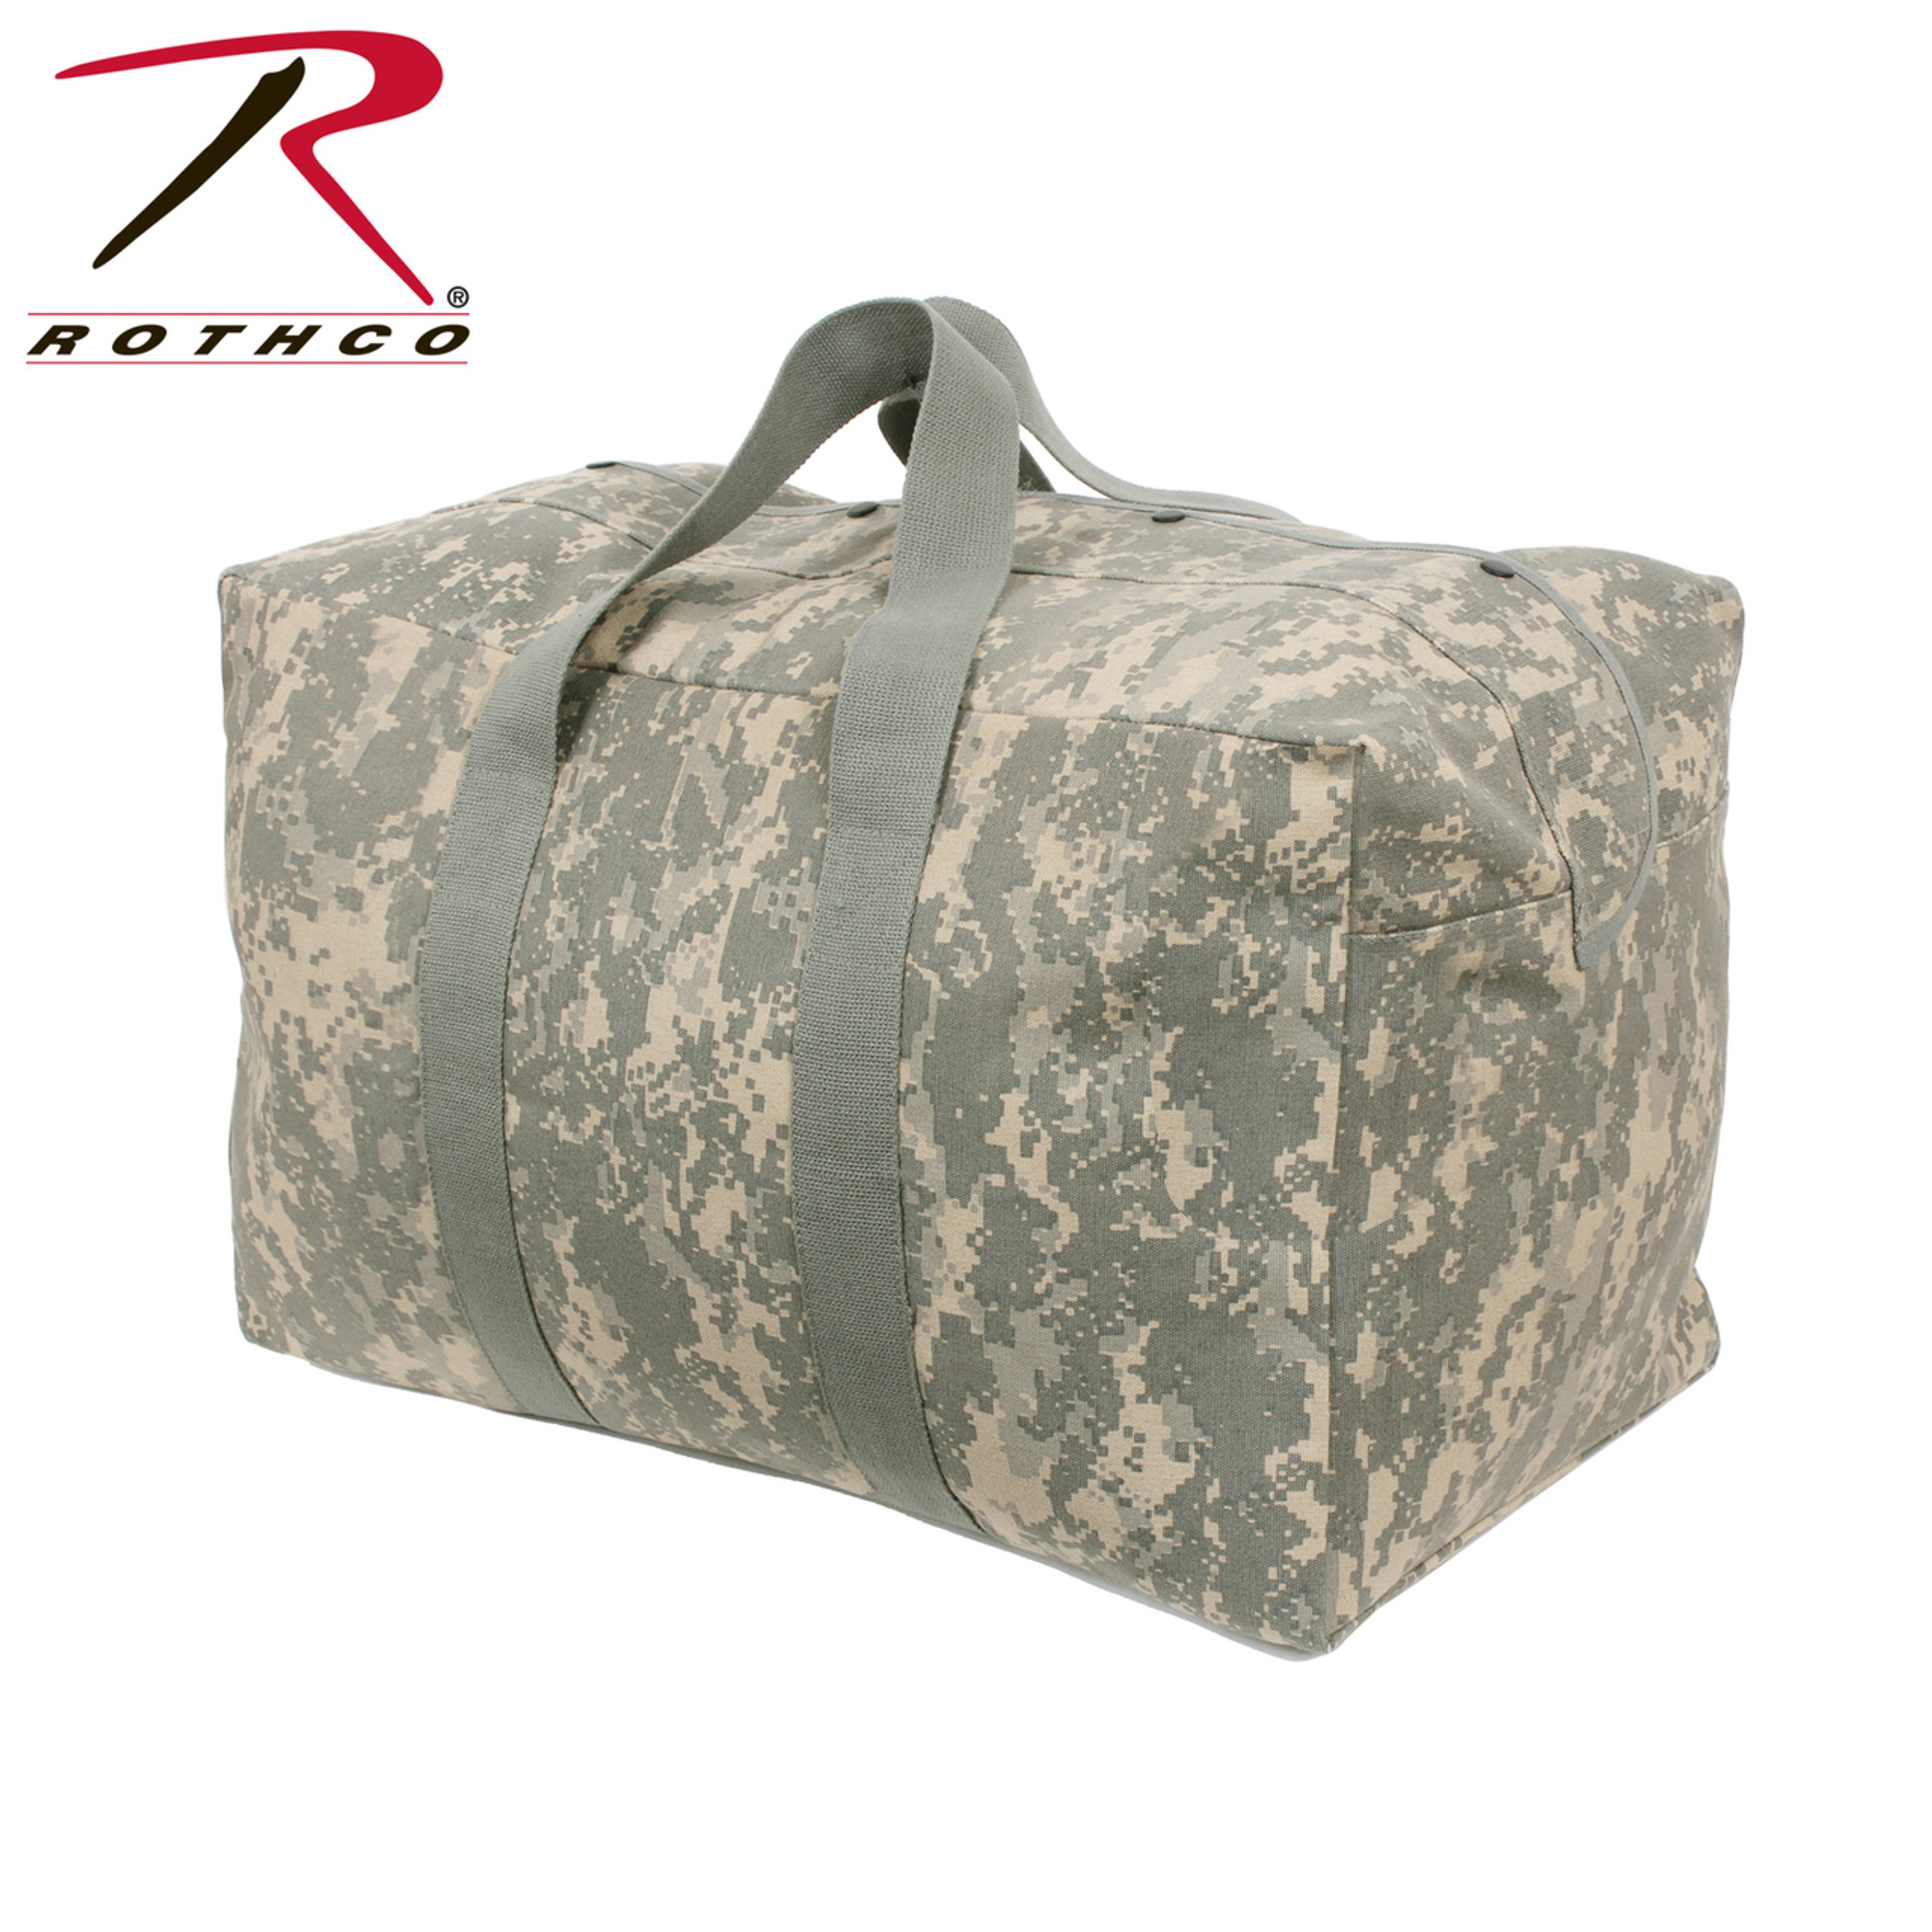 Rothco Canvas Parachute Cargo Bag - ACU